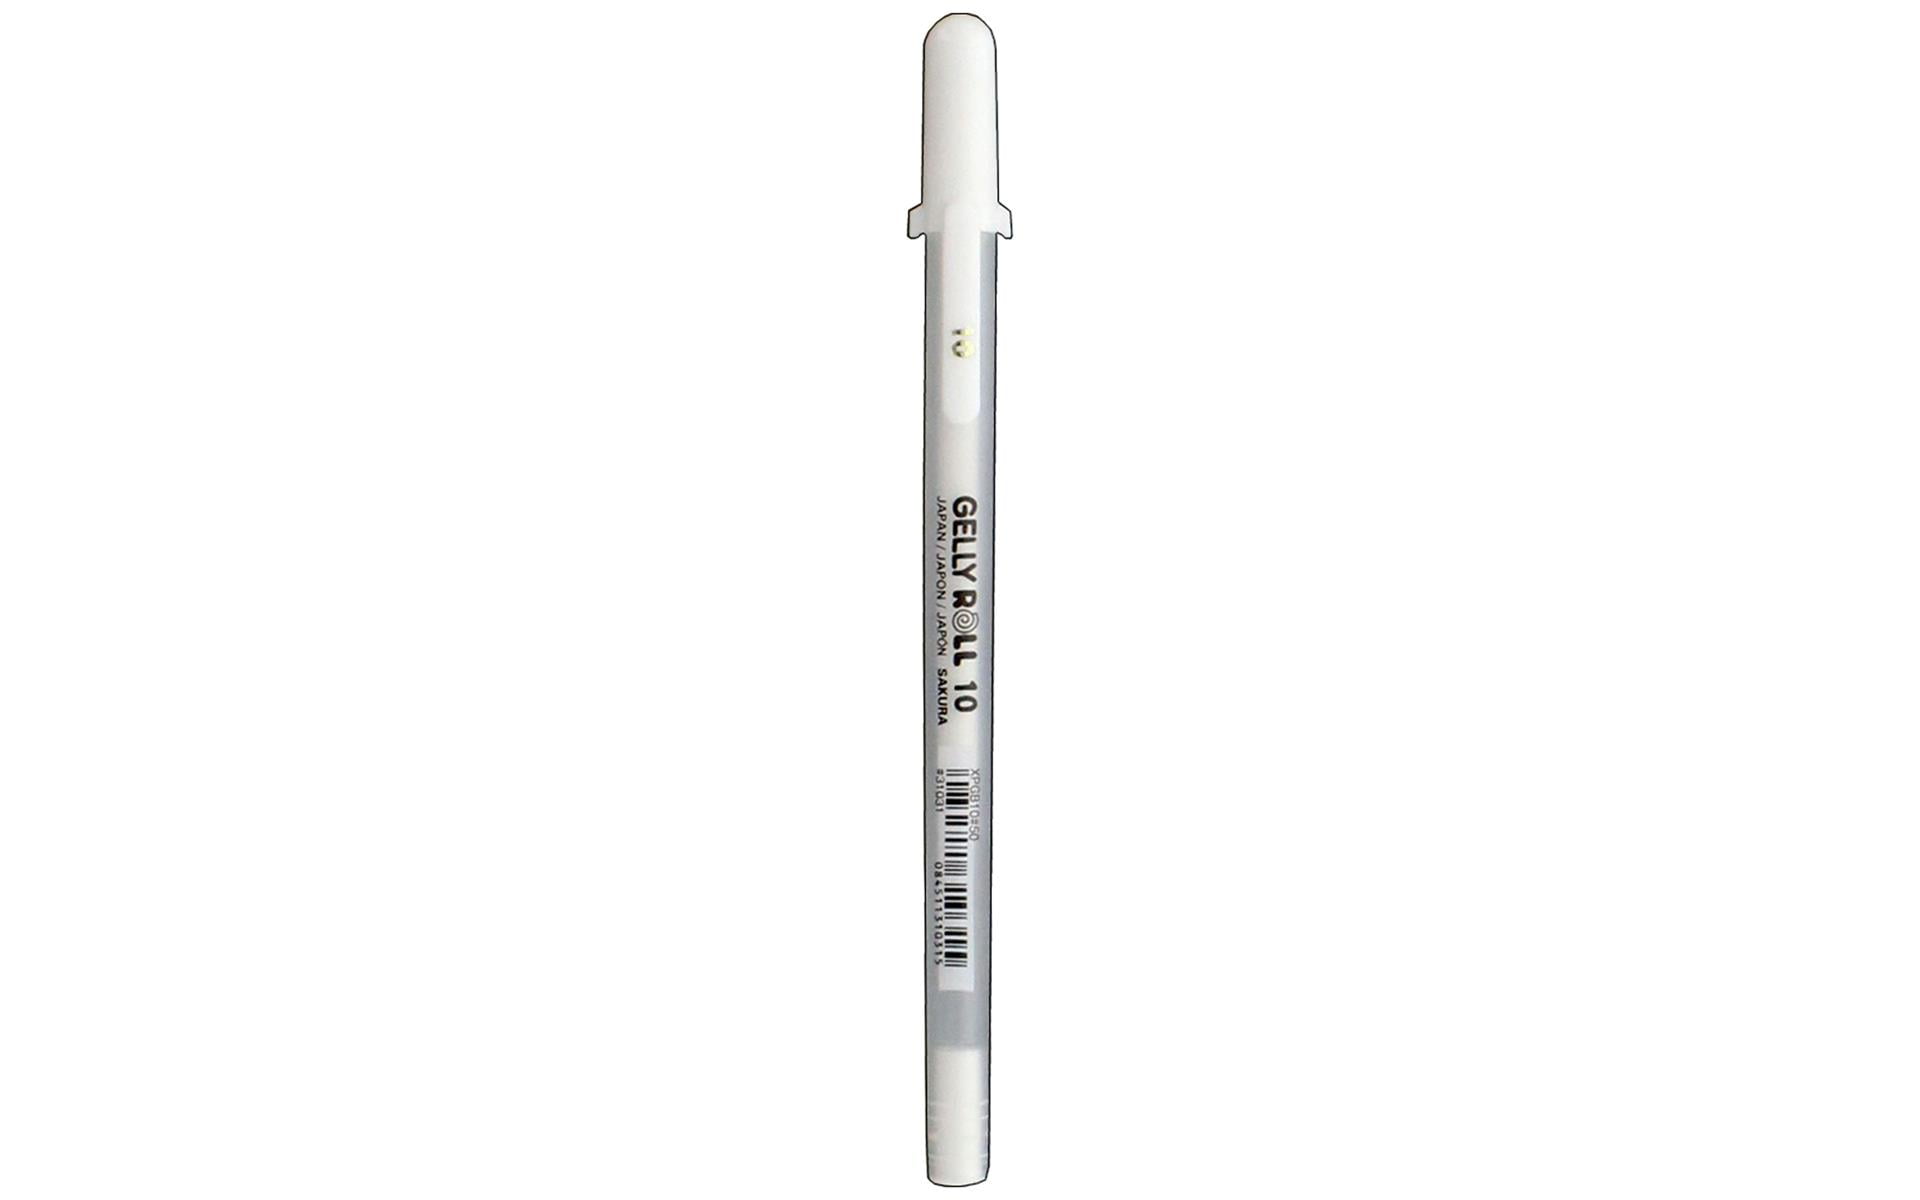 Sakura Gelly Roll Pen Classic 10 Bold Bulk White 